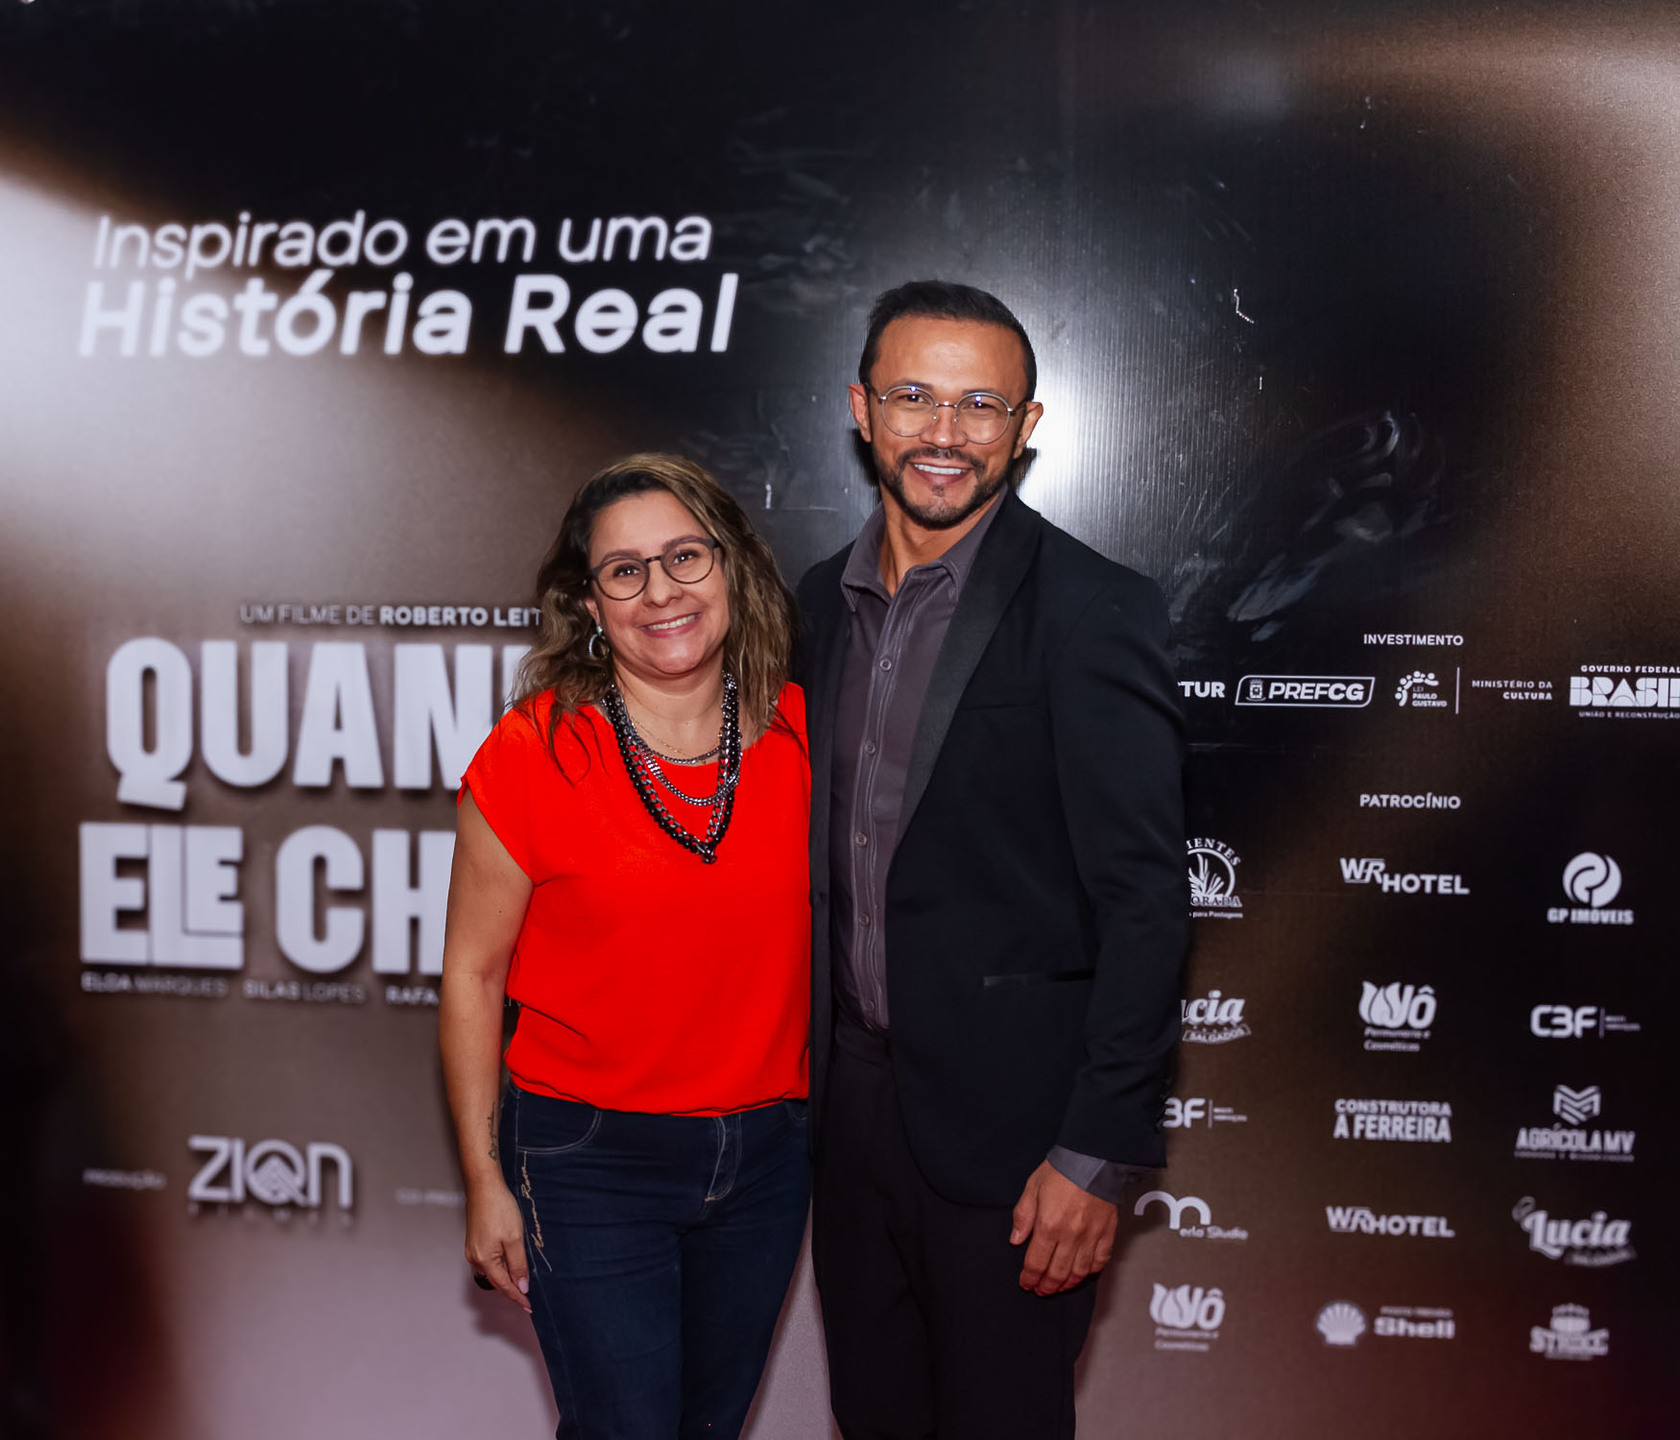 Viviane Vaz elogiou a coragem de Roberto Leite em colocar a delicada história num filme e ampliar a denúncia. Foto: Tero Queiroz